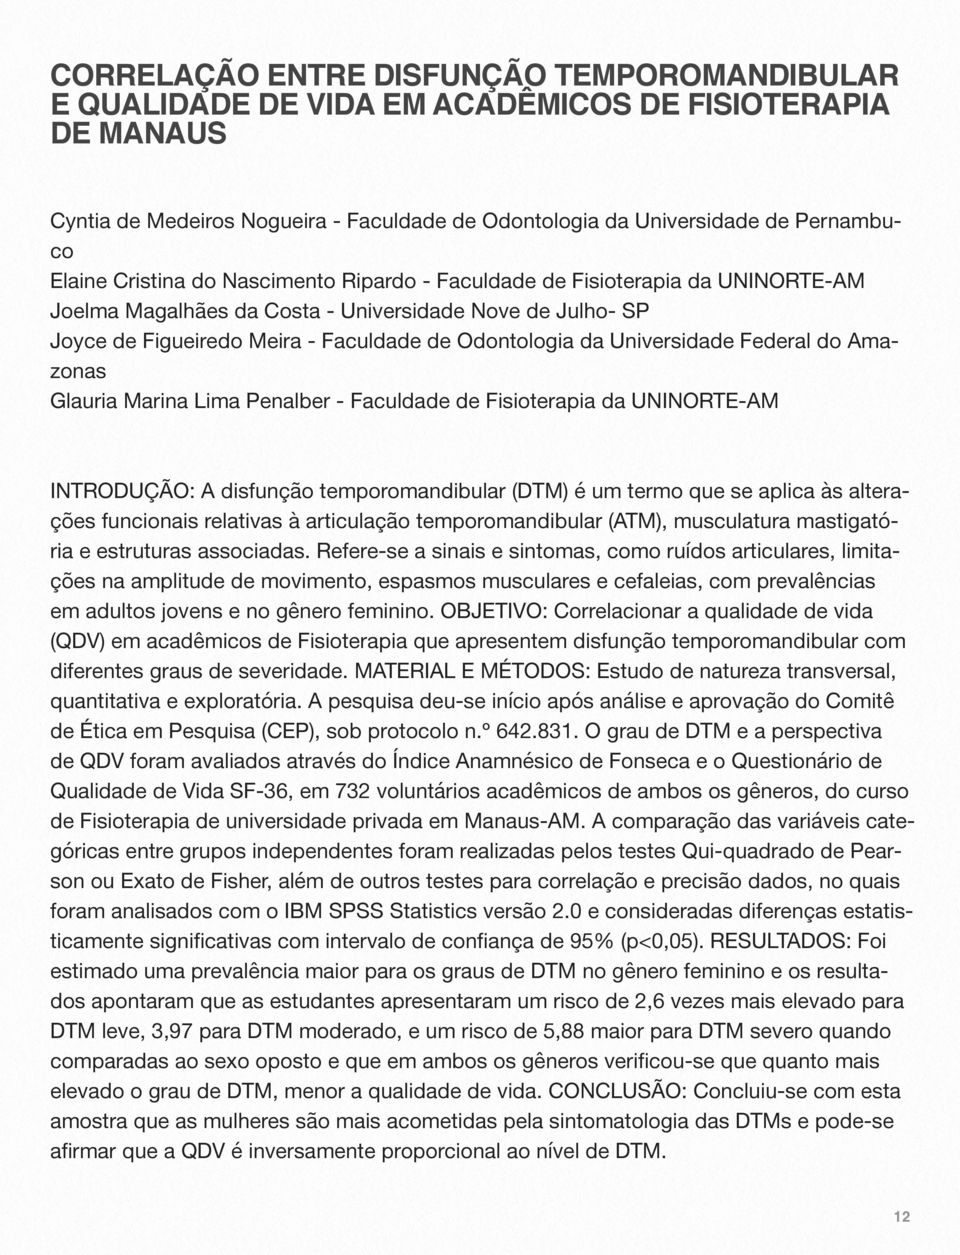 Universidade Federal do Amazonas Glauria Marina Lima Penalber - Faculdade de Fisioterapia da UNINORTE-AM INTRODUÇÃO: A disfunção temporomandibular (DTM) é um termo que se aplica às alterações